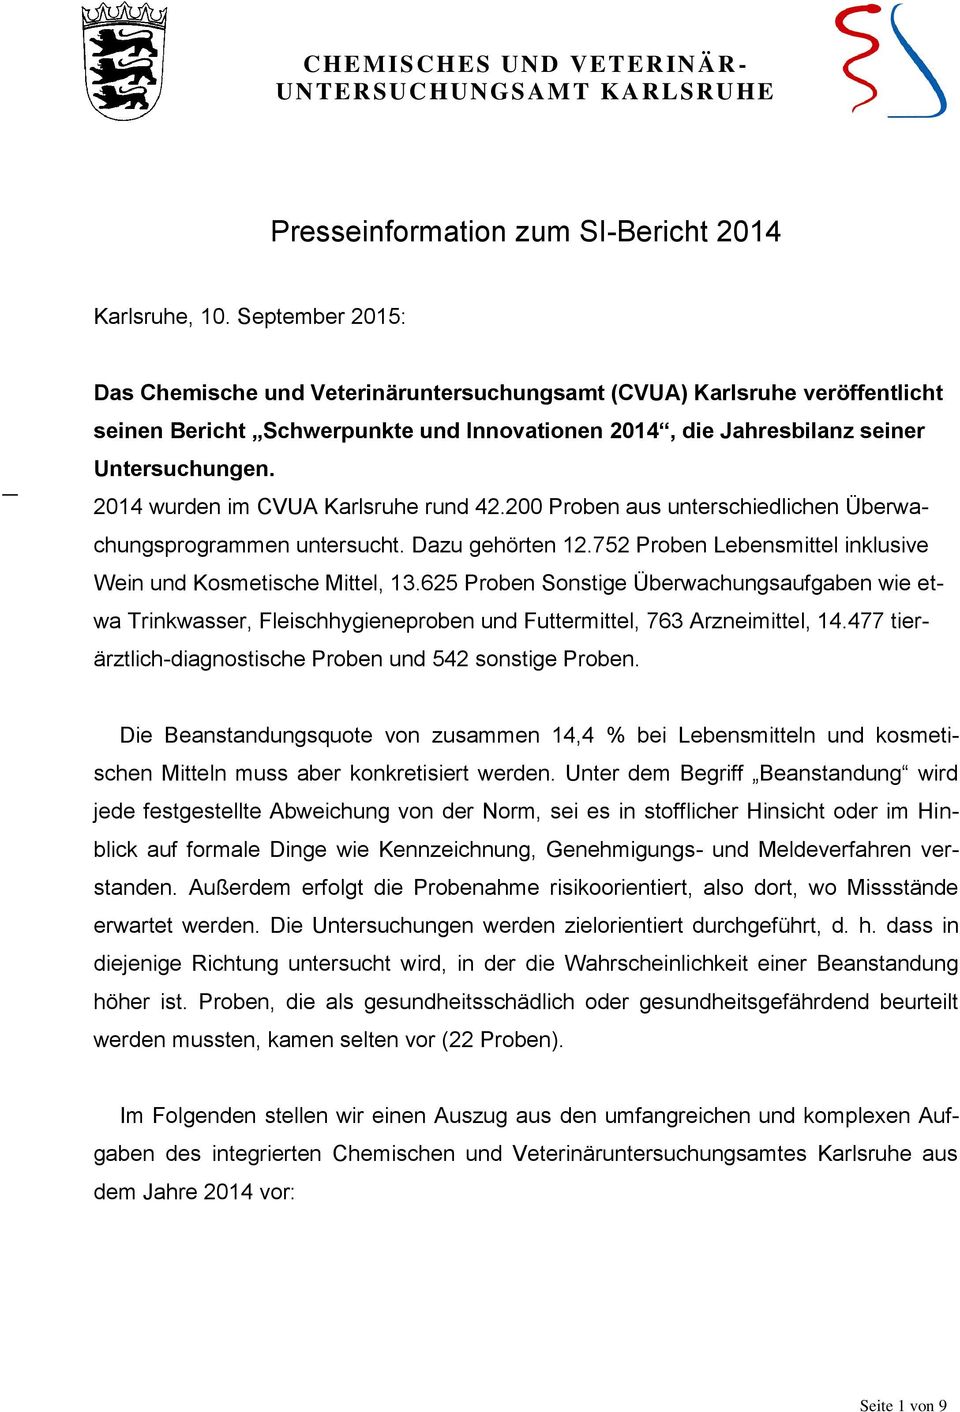 2014 wurden im CVUA Karlsruhe rund 42.200 Proben aus unterschiedlichen Überwachungsprogrammen untersucht. Dazu gehörten 12.752 Proben Lebensmittel inklusive Wein und Kosmetische Mittel, 13.